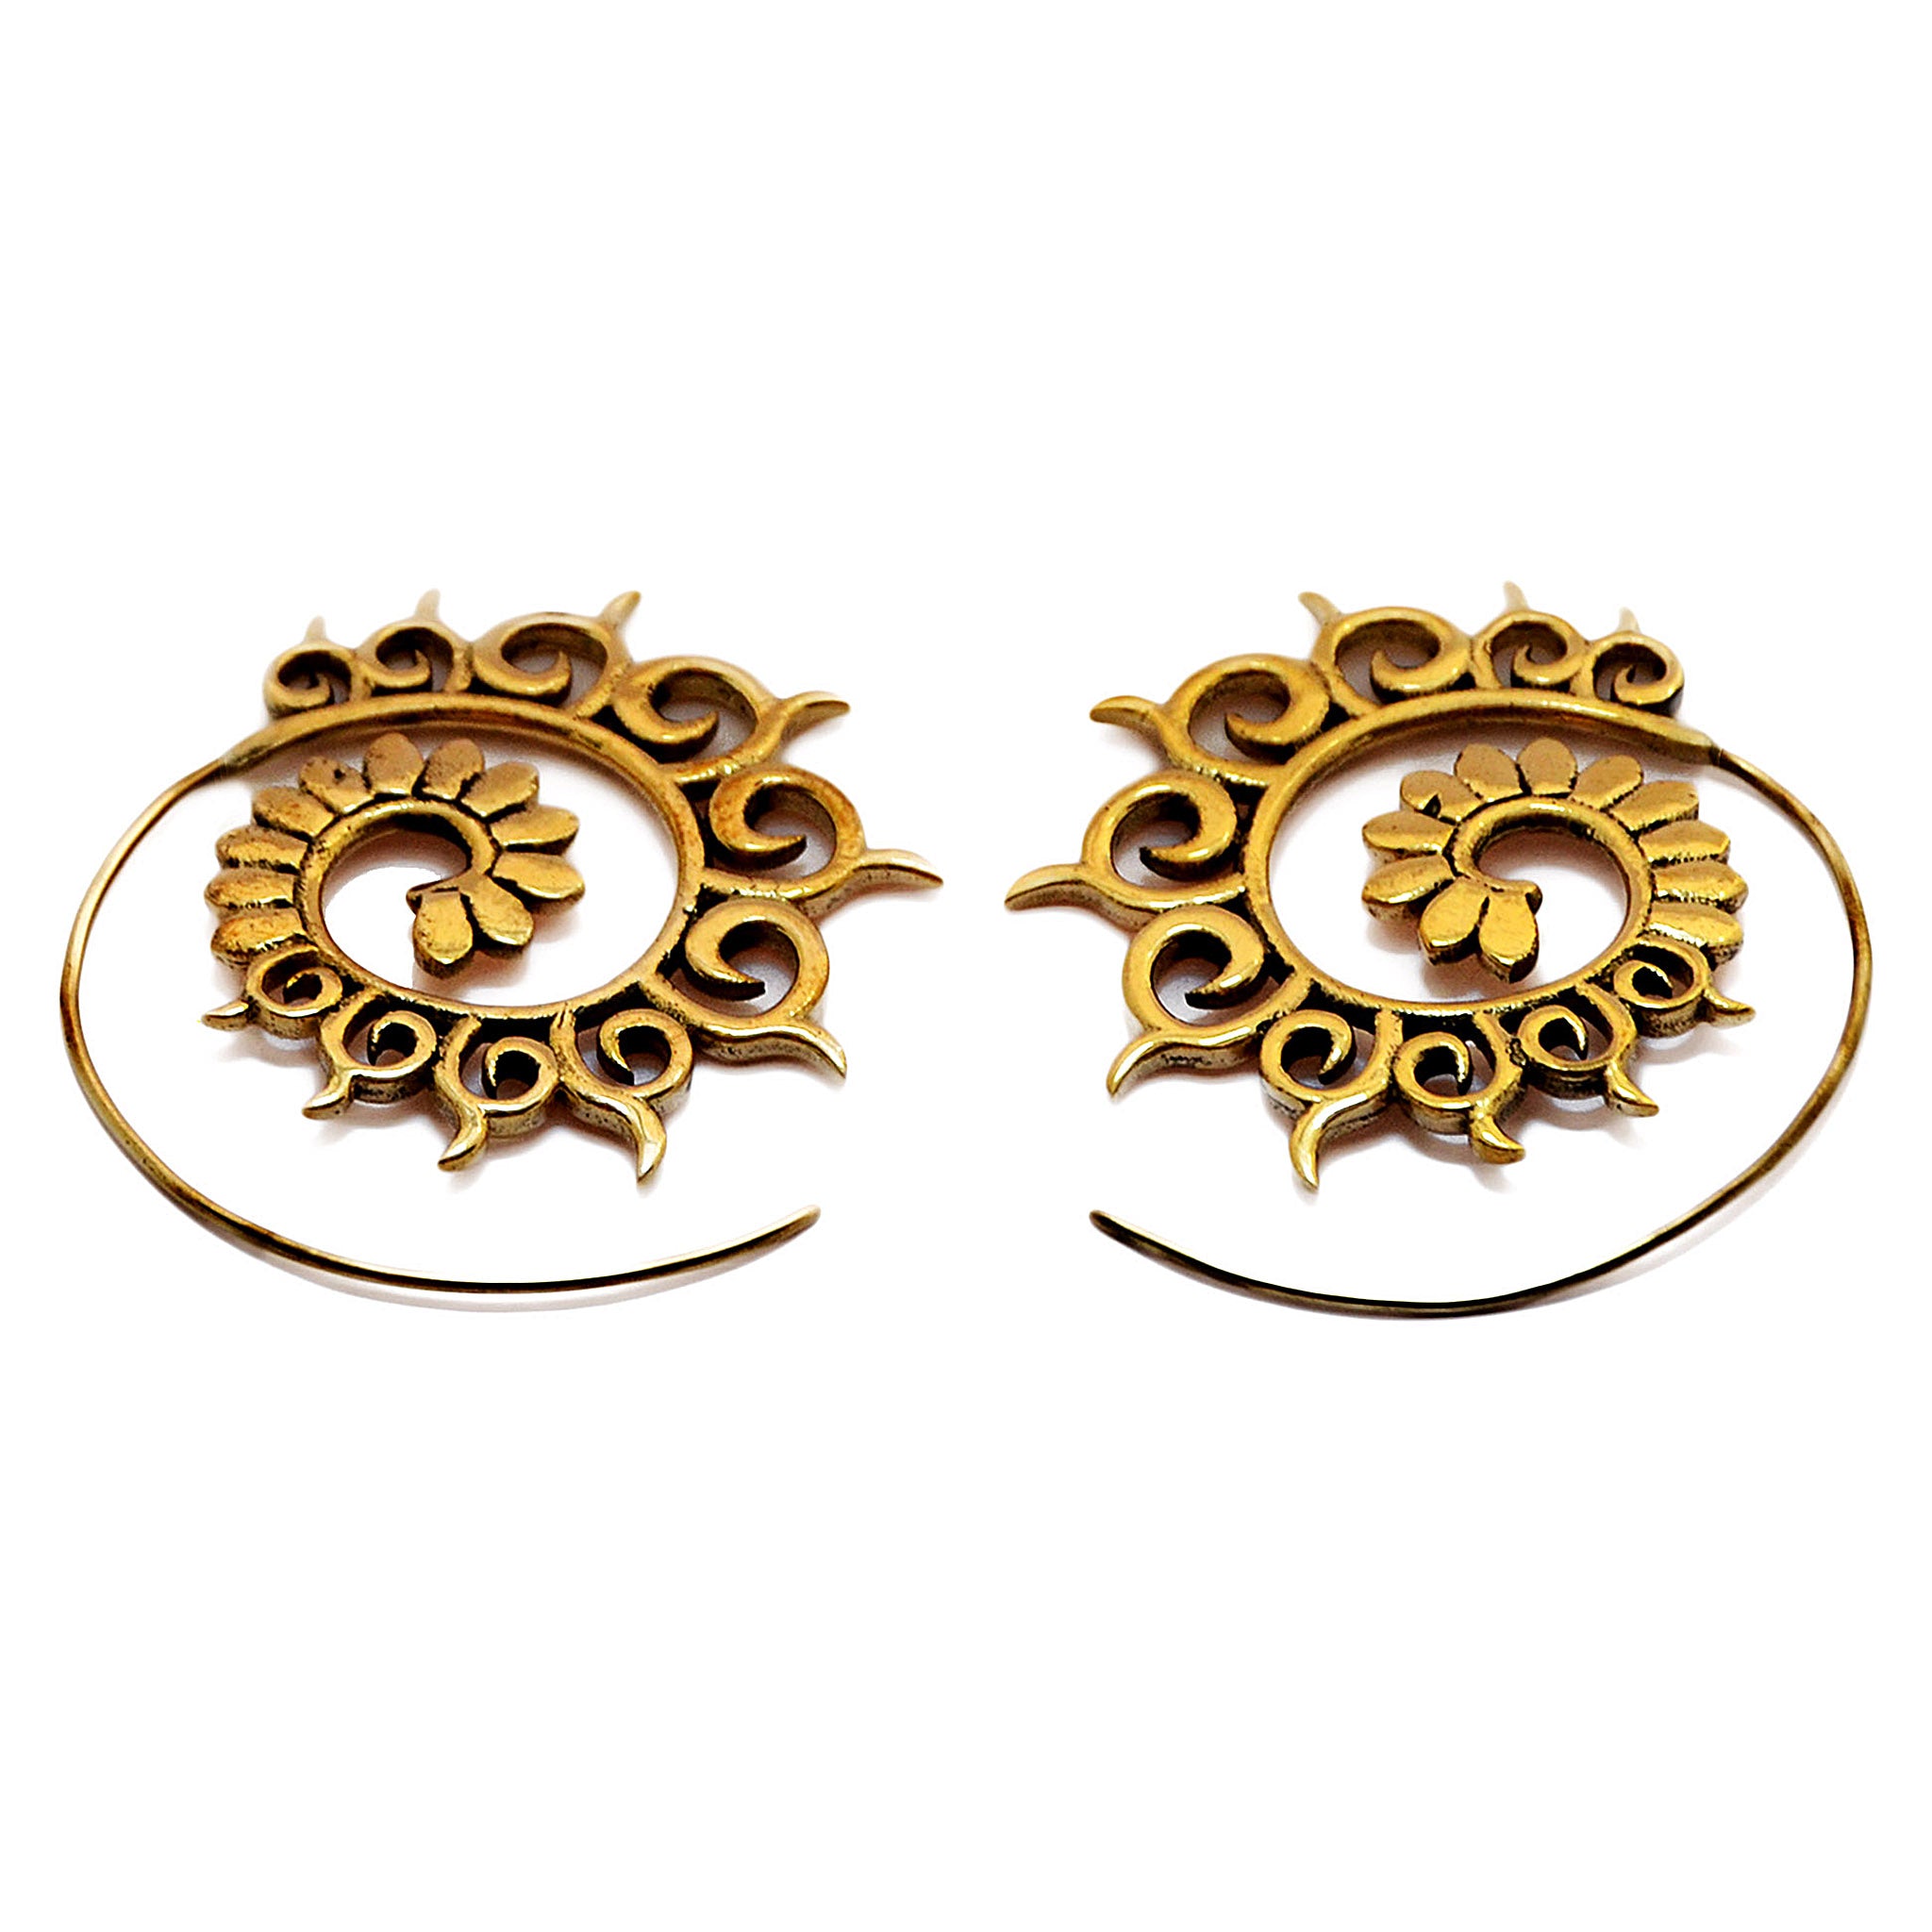 Spiral hoop earrings